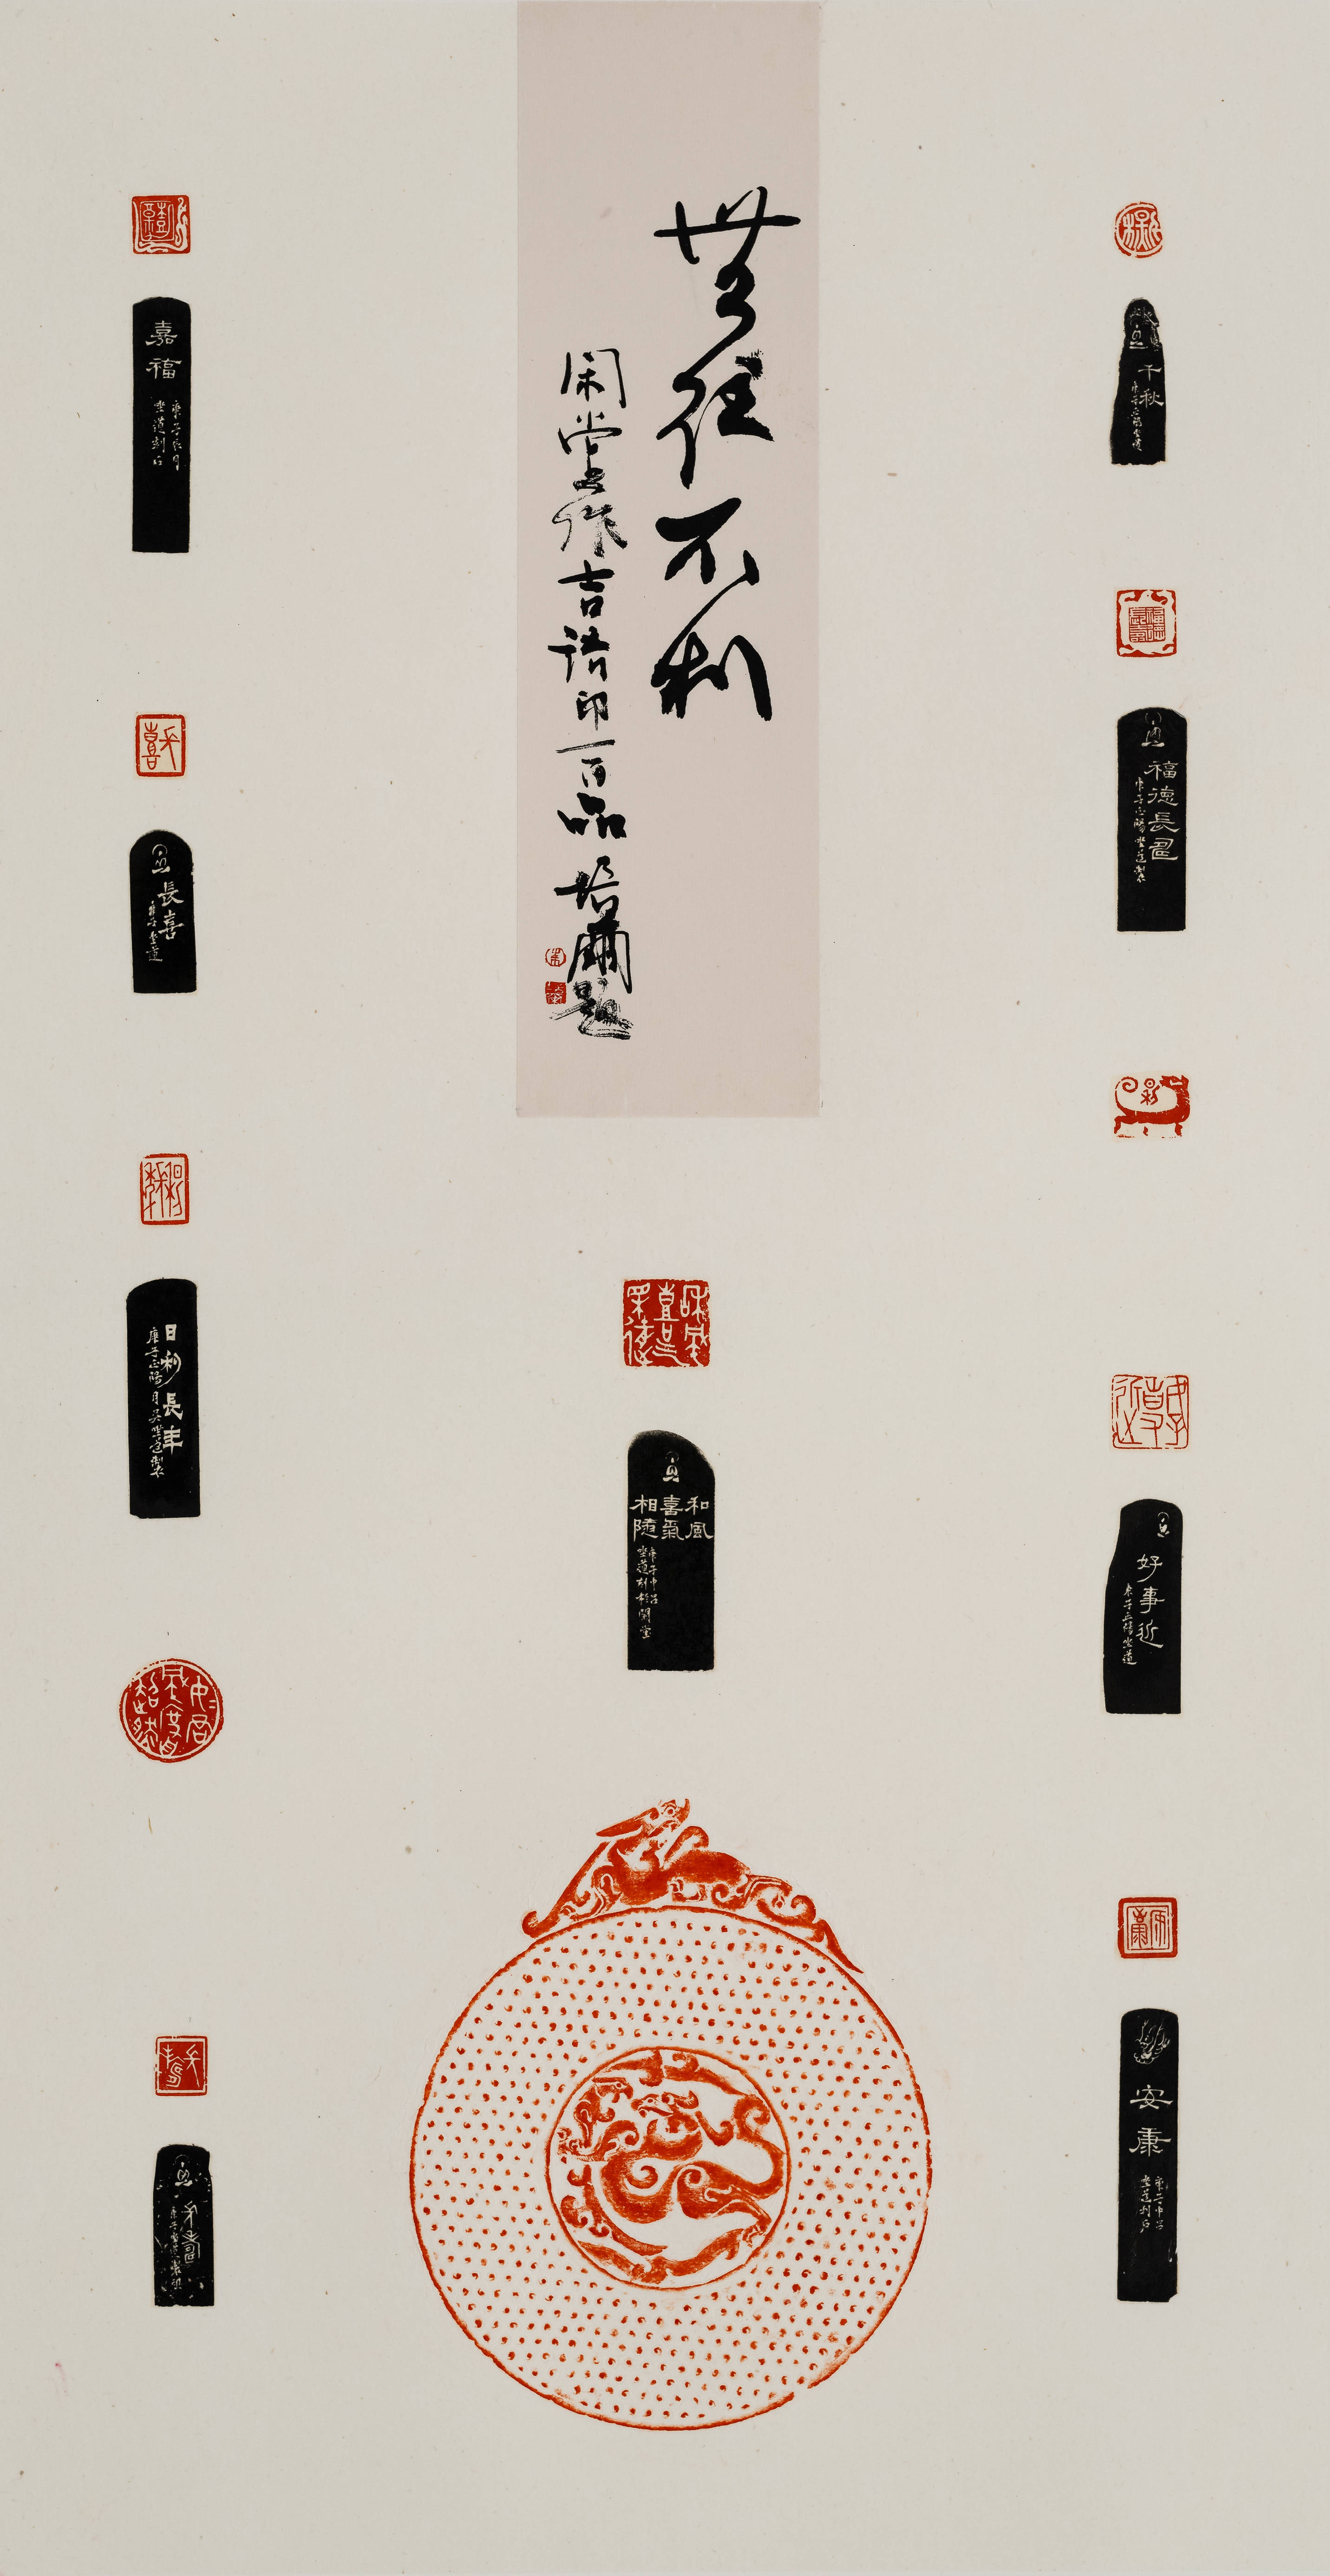 念念无相——闲堂主题篆刻作品展暨《作品集》发布雅集在京举办